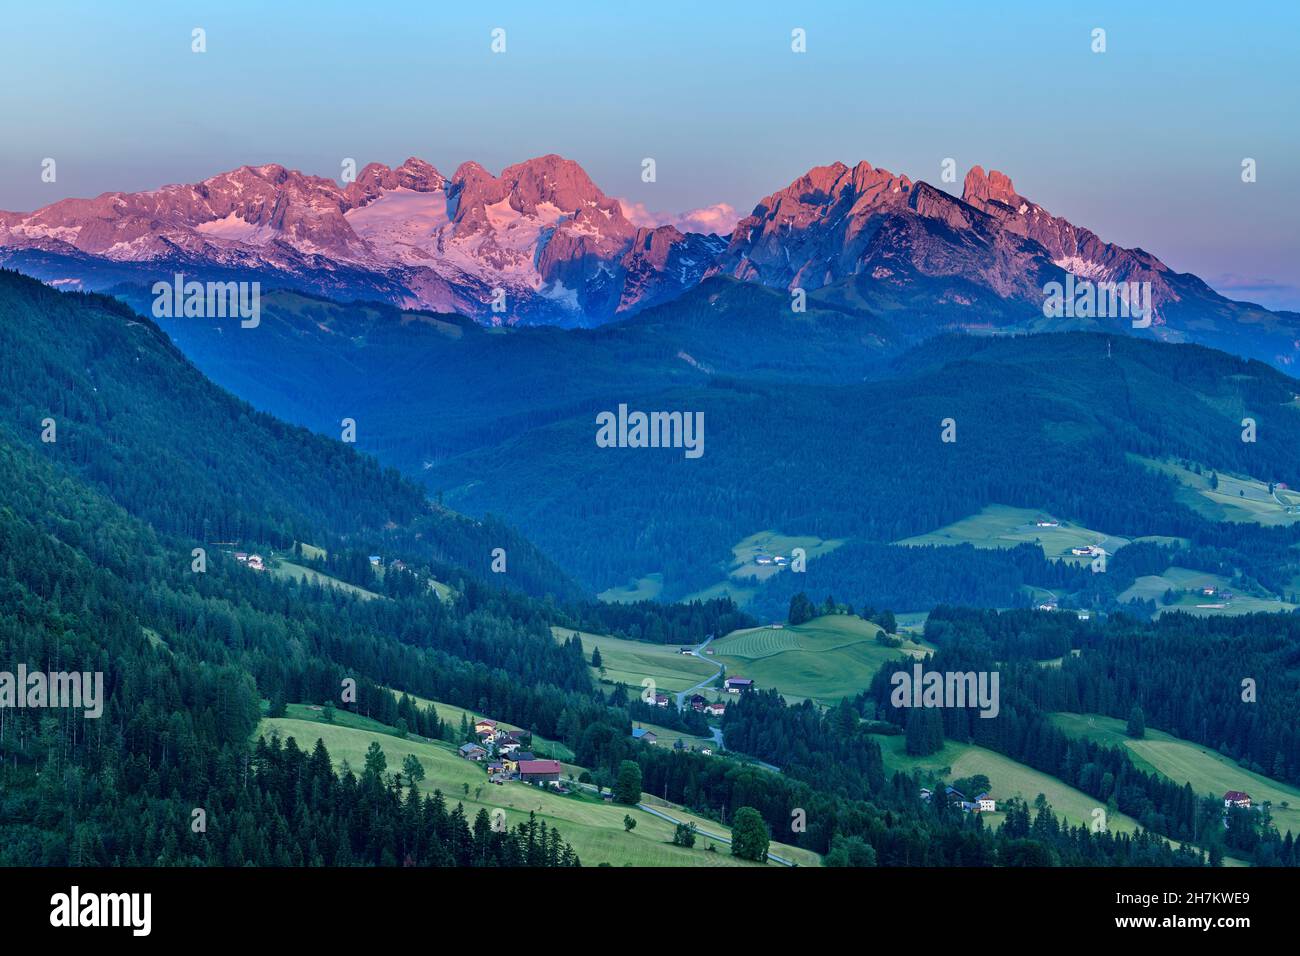 Pine trees on mountain at Salzburg, Austria Stock Photo